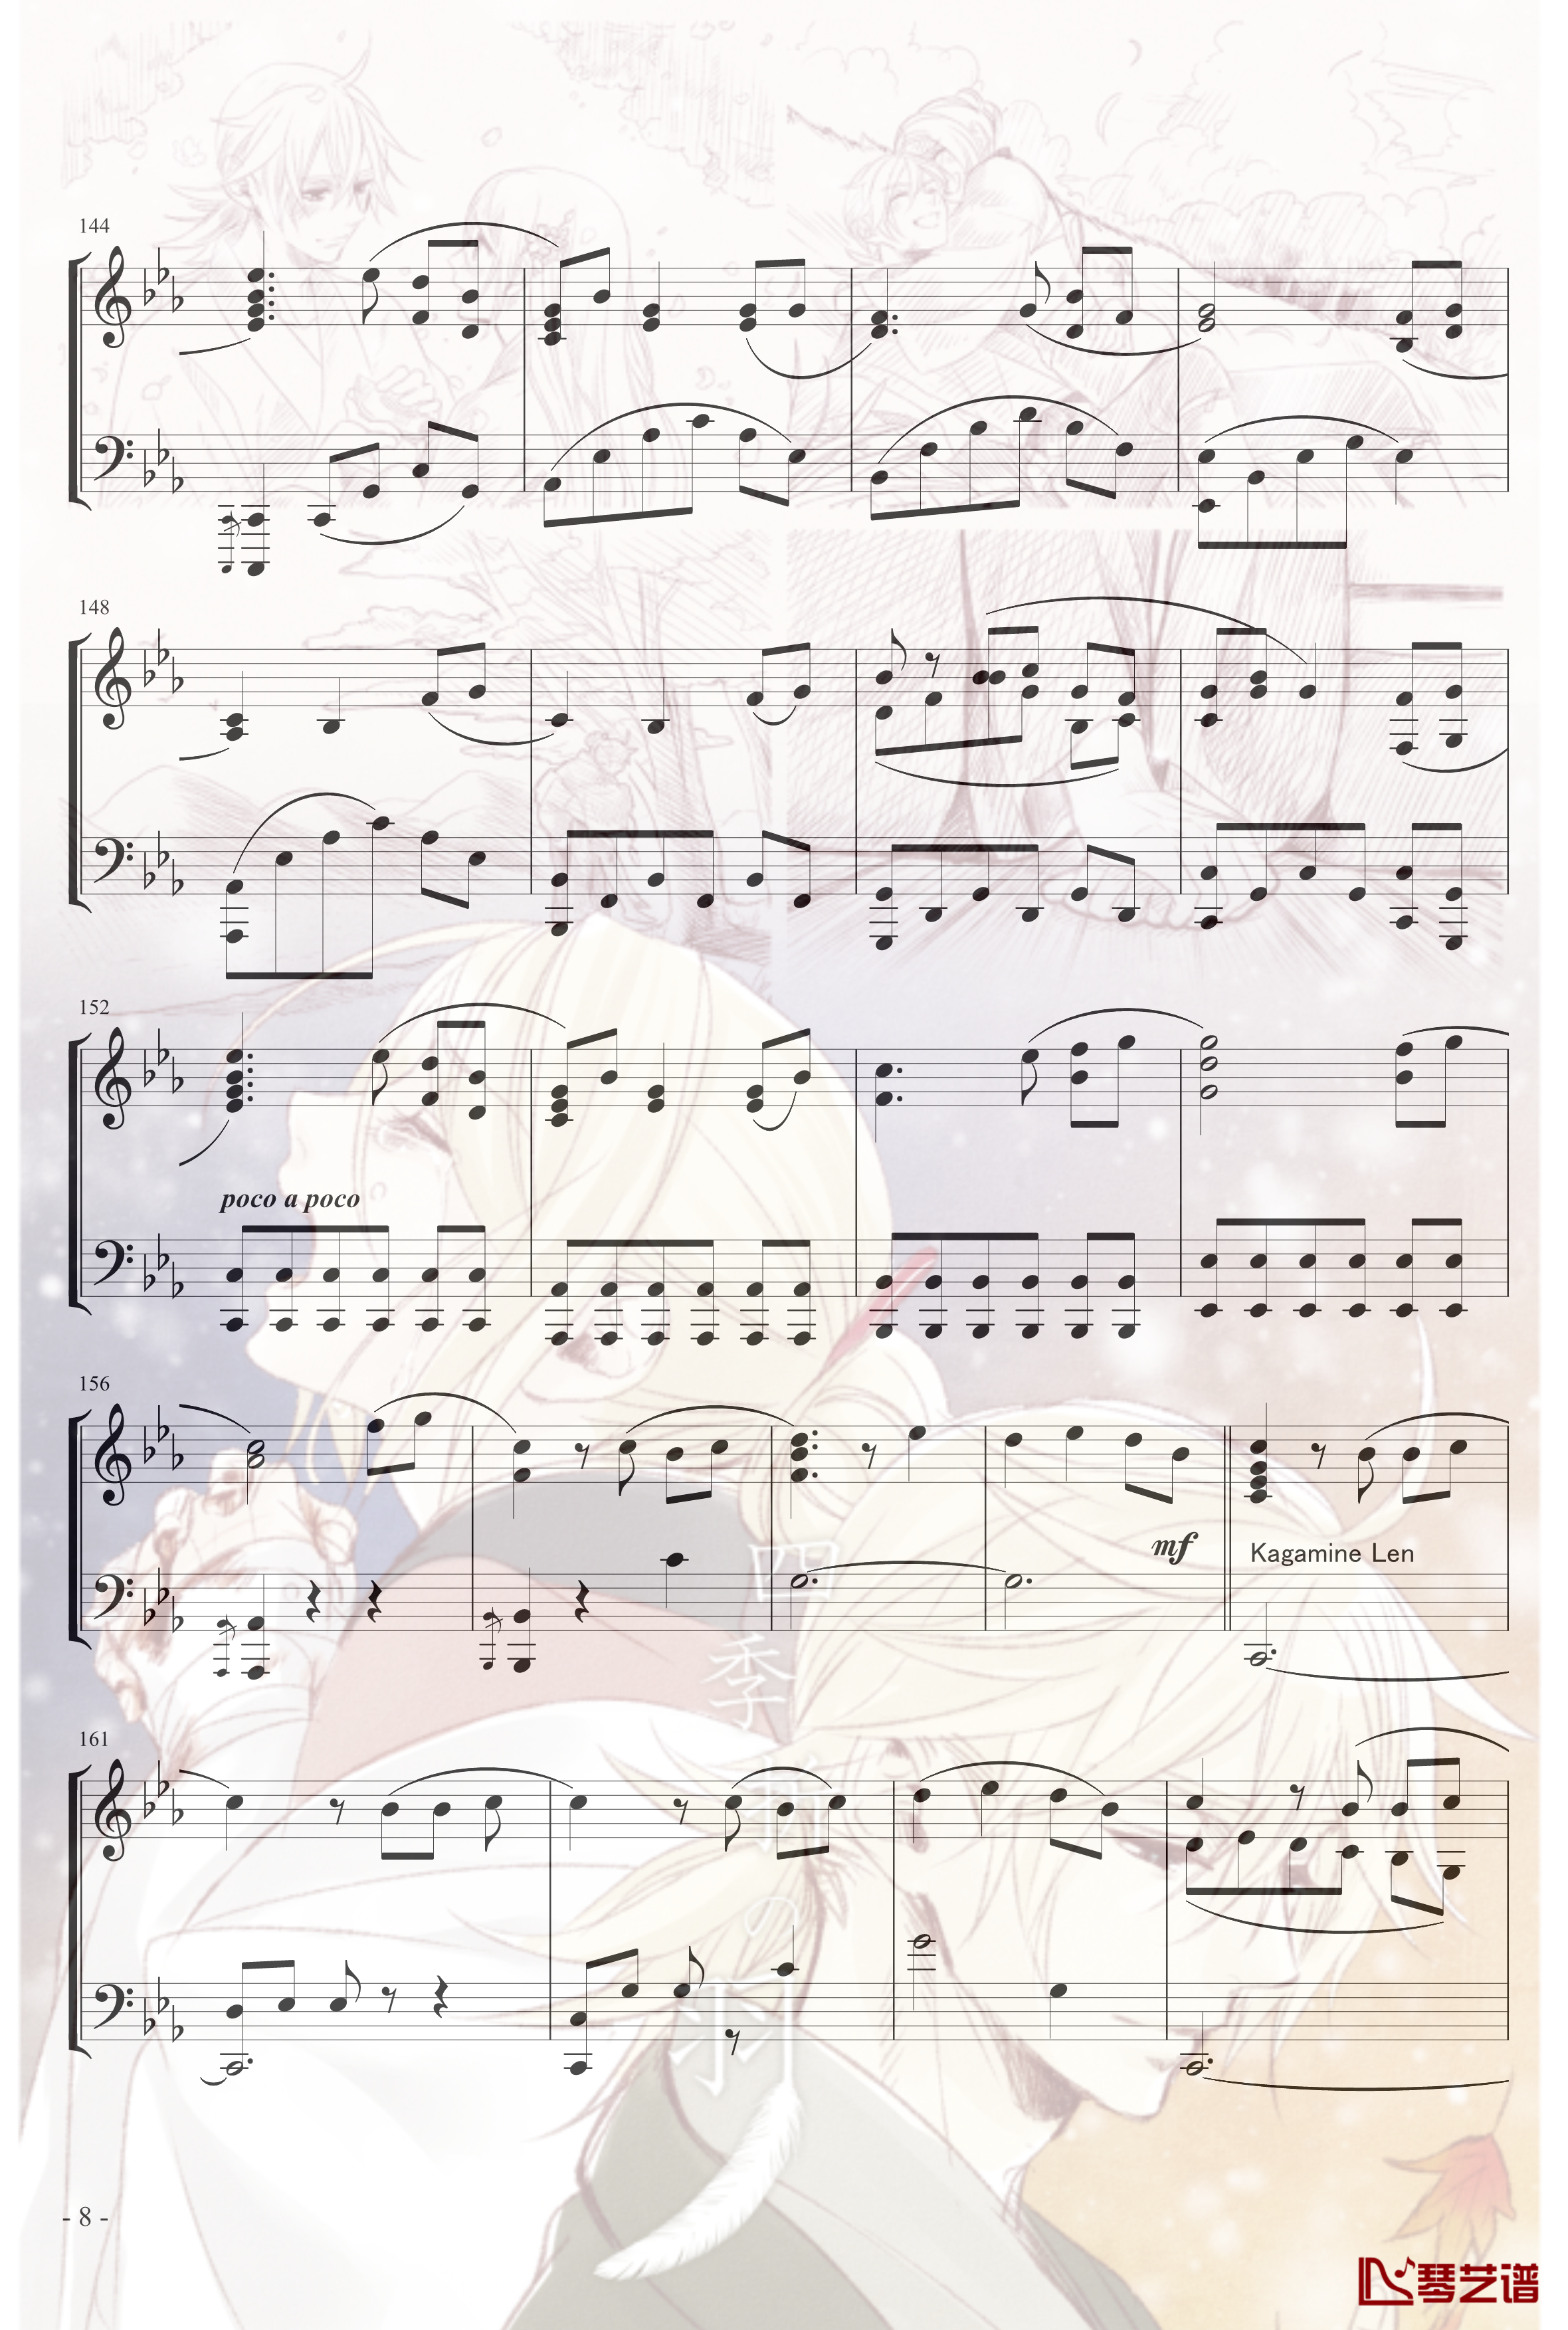 镜音リン レン四季折之羽钢琴谱-初音未来8